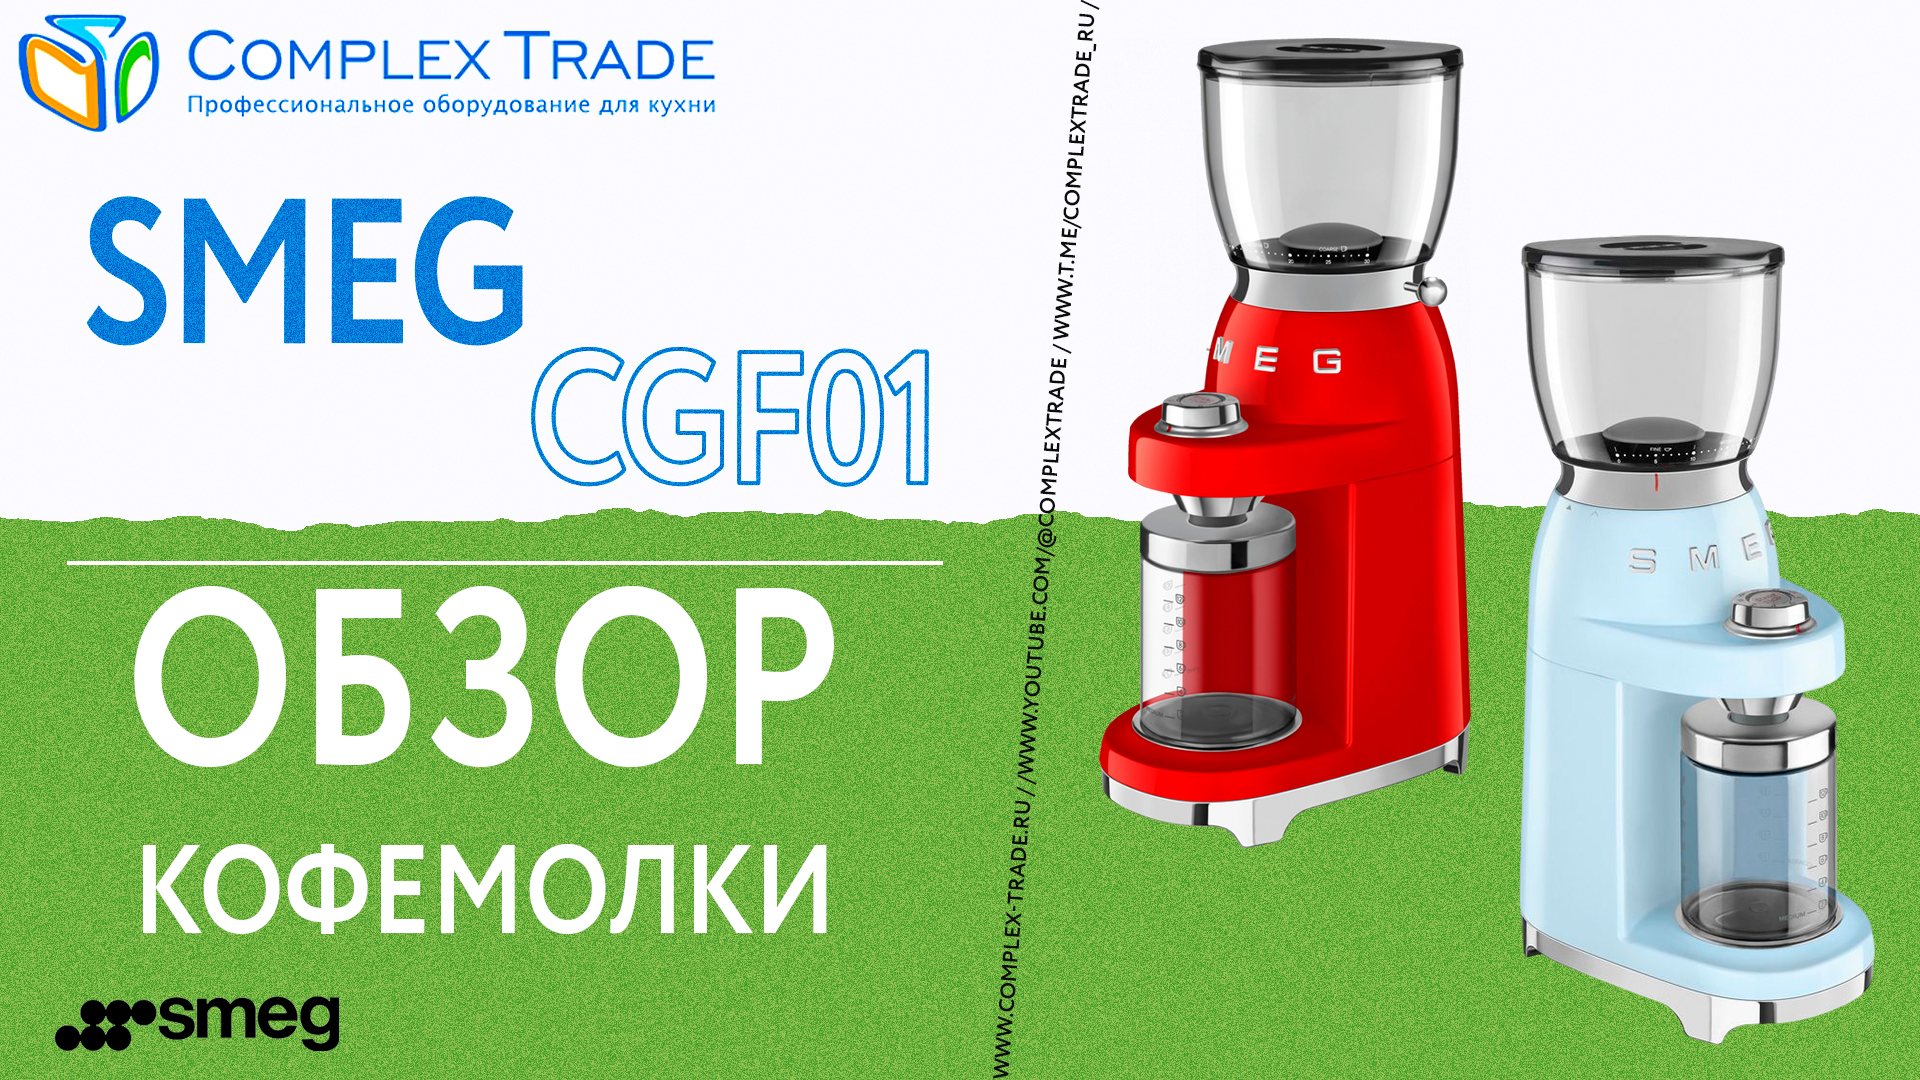 Smeg CGF01 - Обзор кофемолки